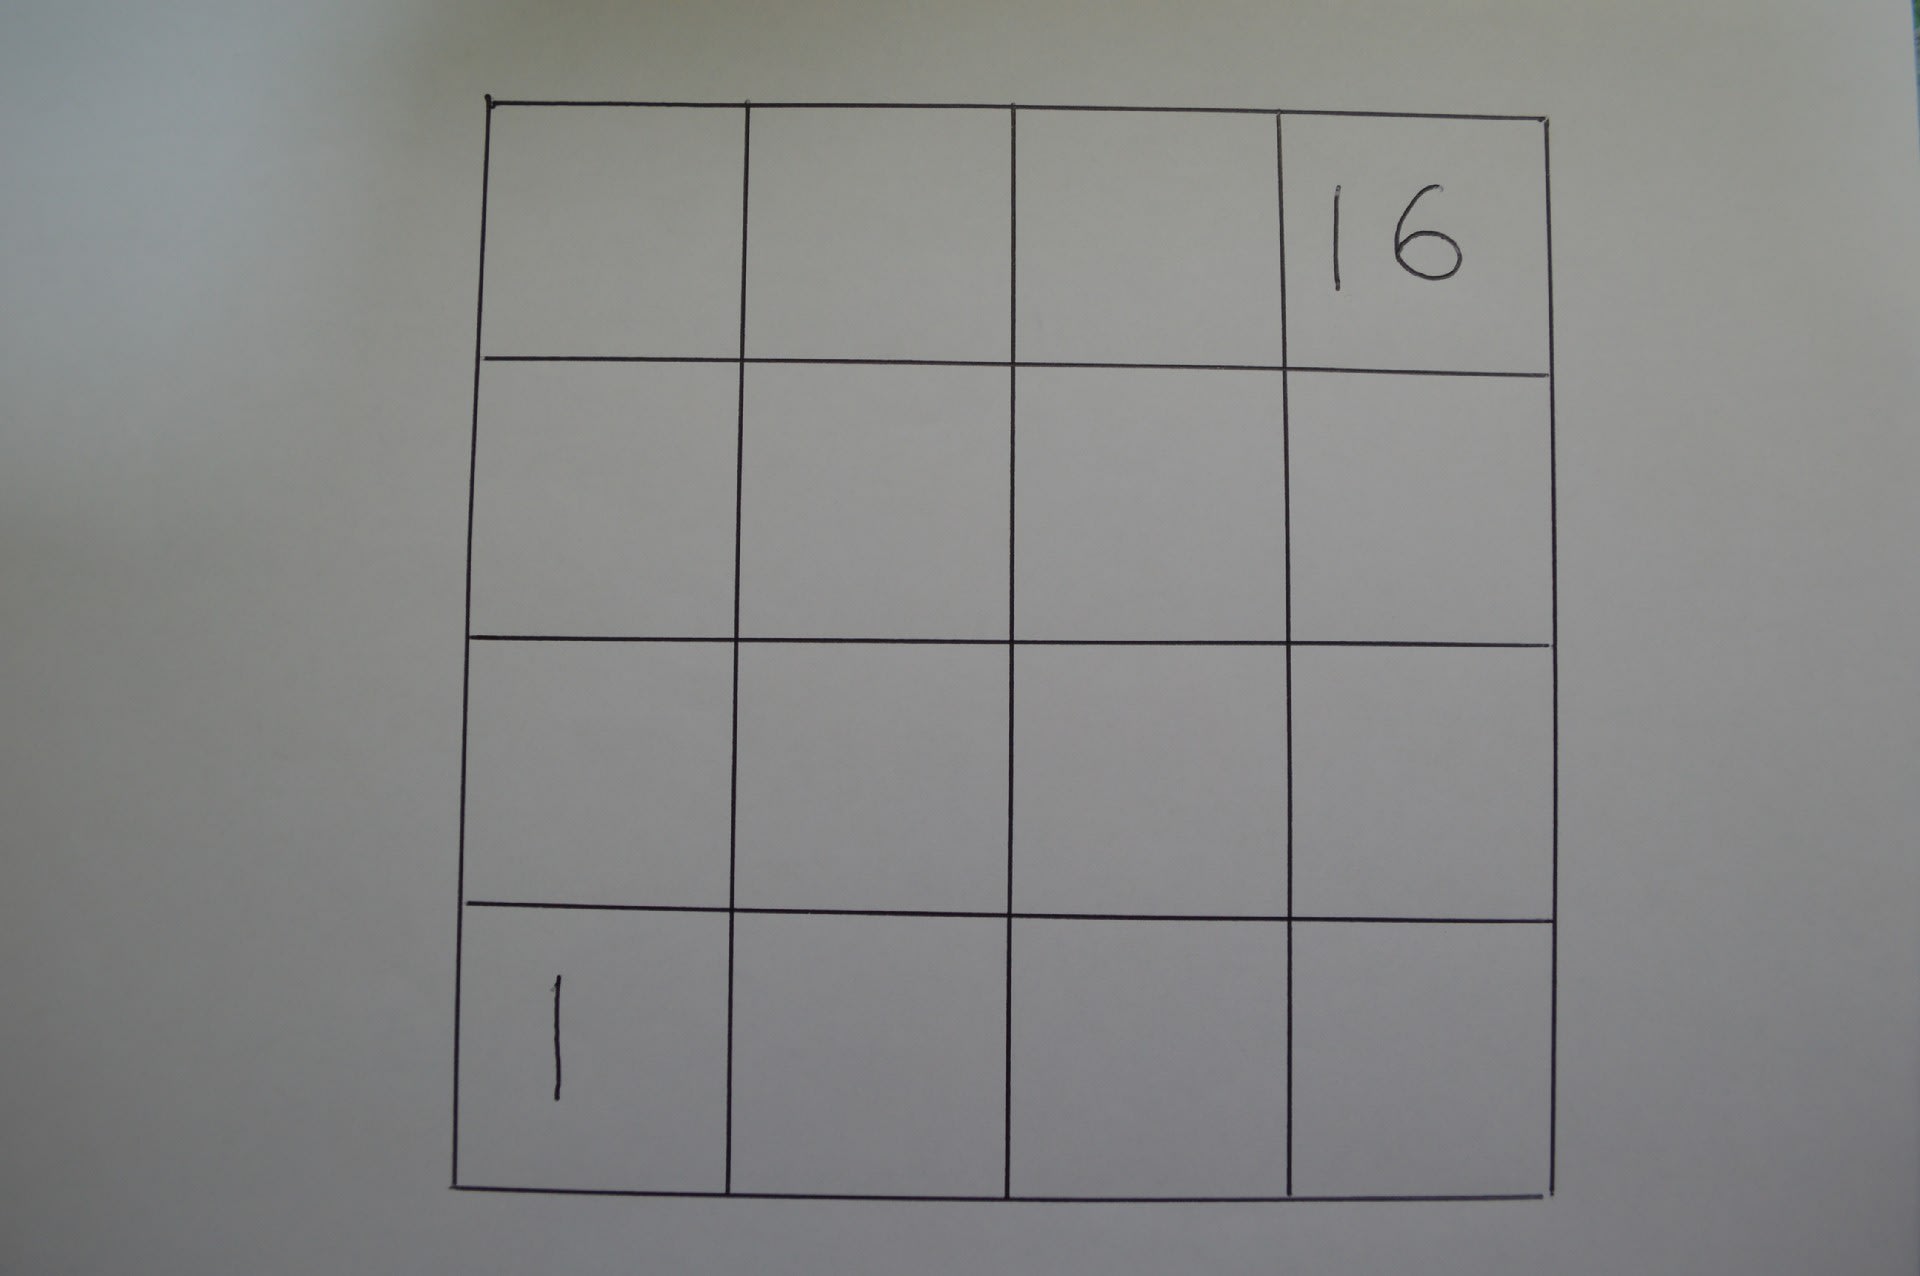 パズル問題038 魔方陣 4 4 アートプラス京めぐり